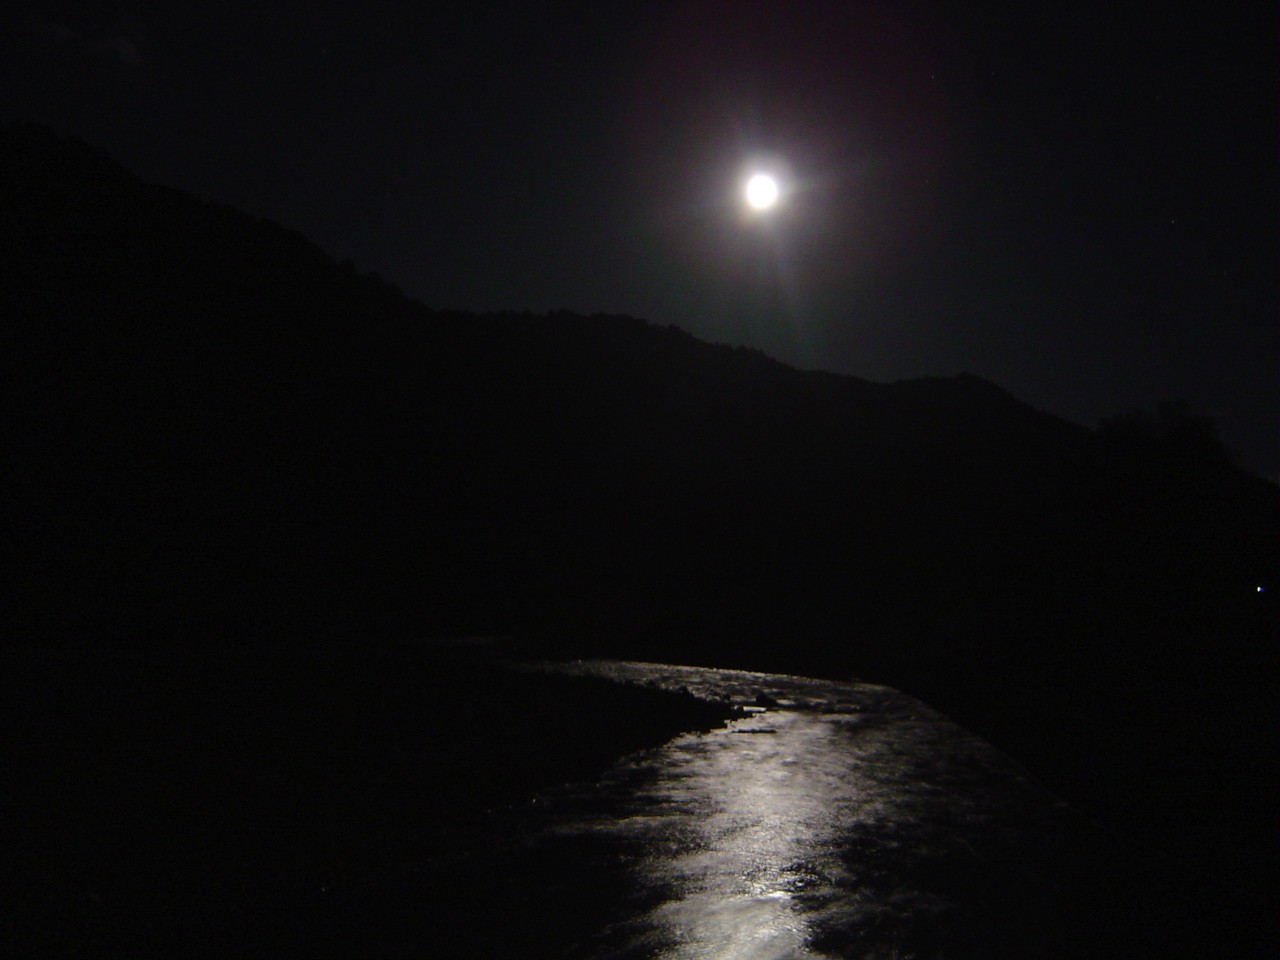 Moonlight (124k image)